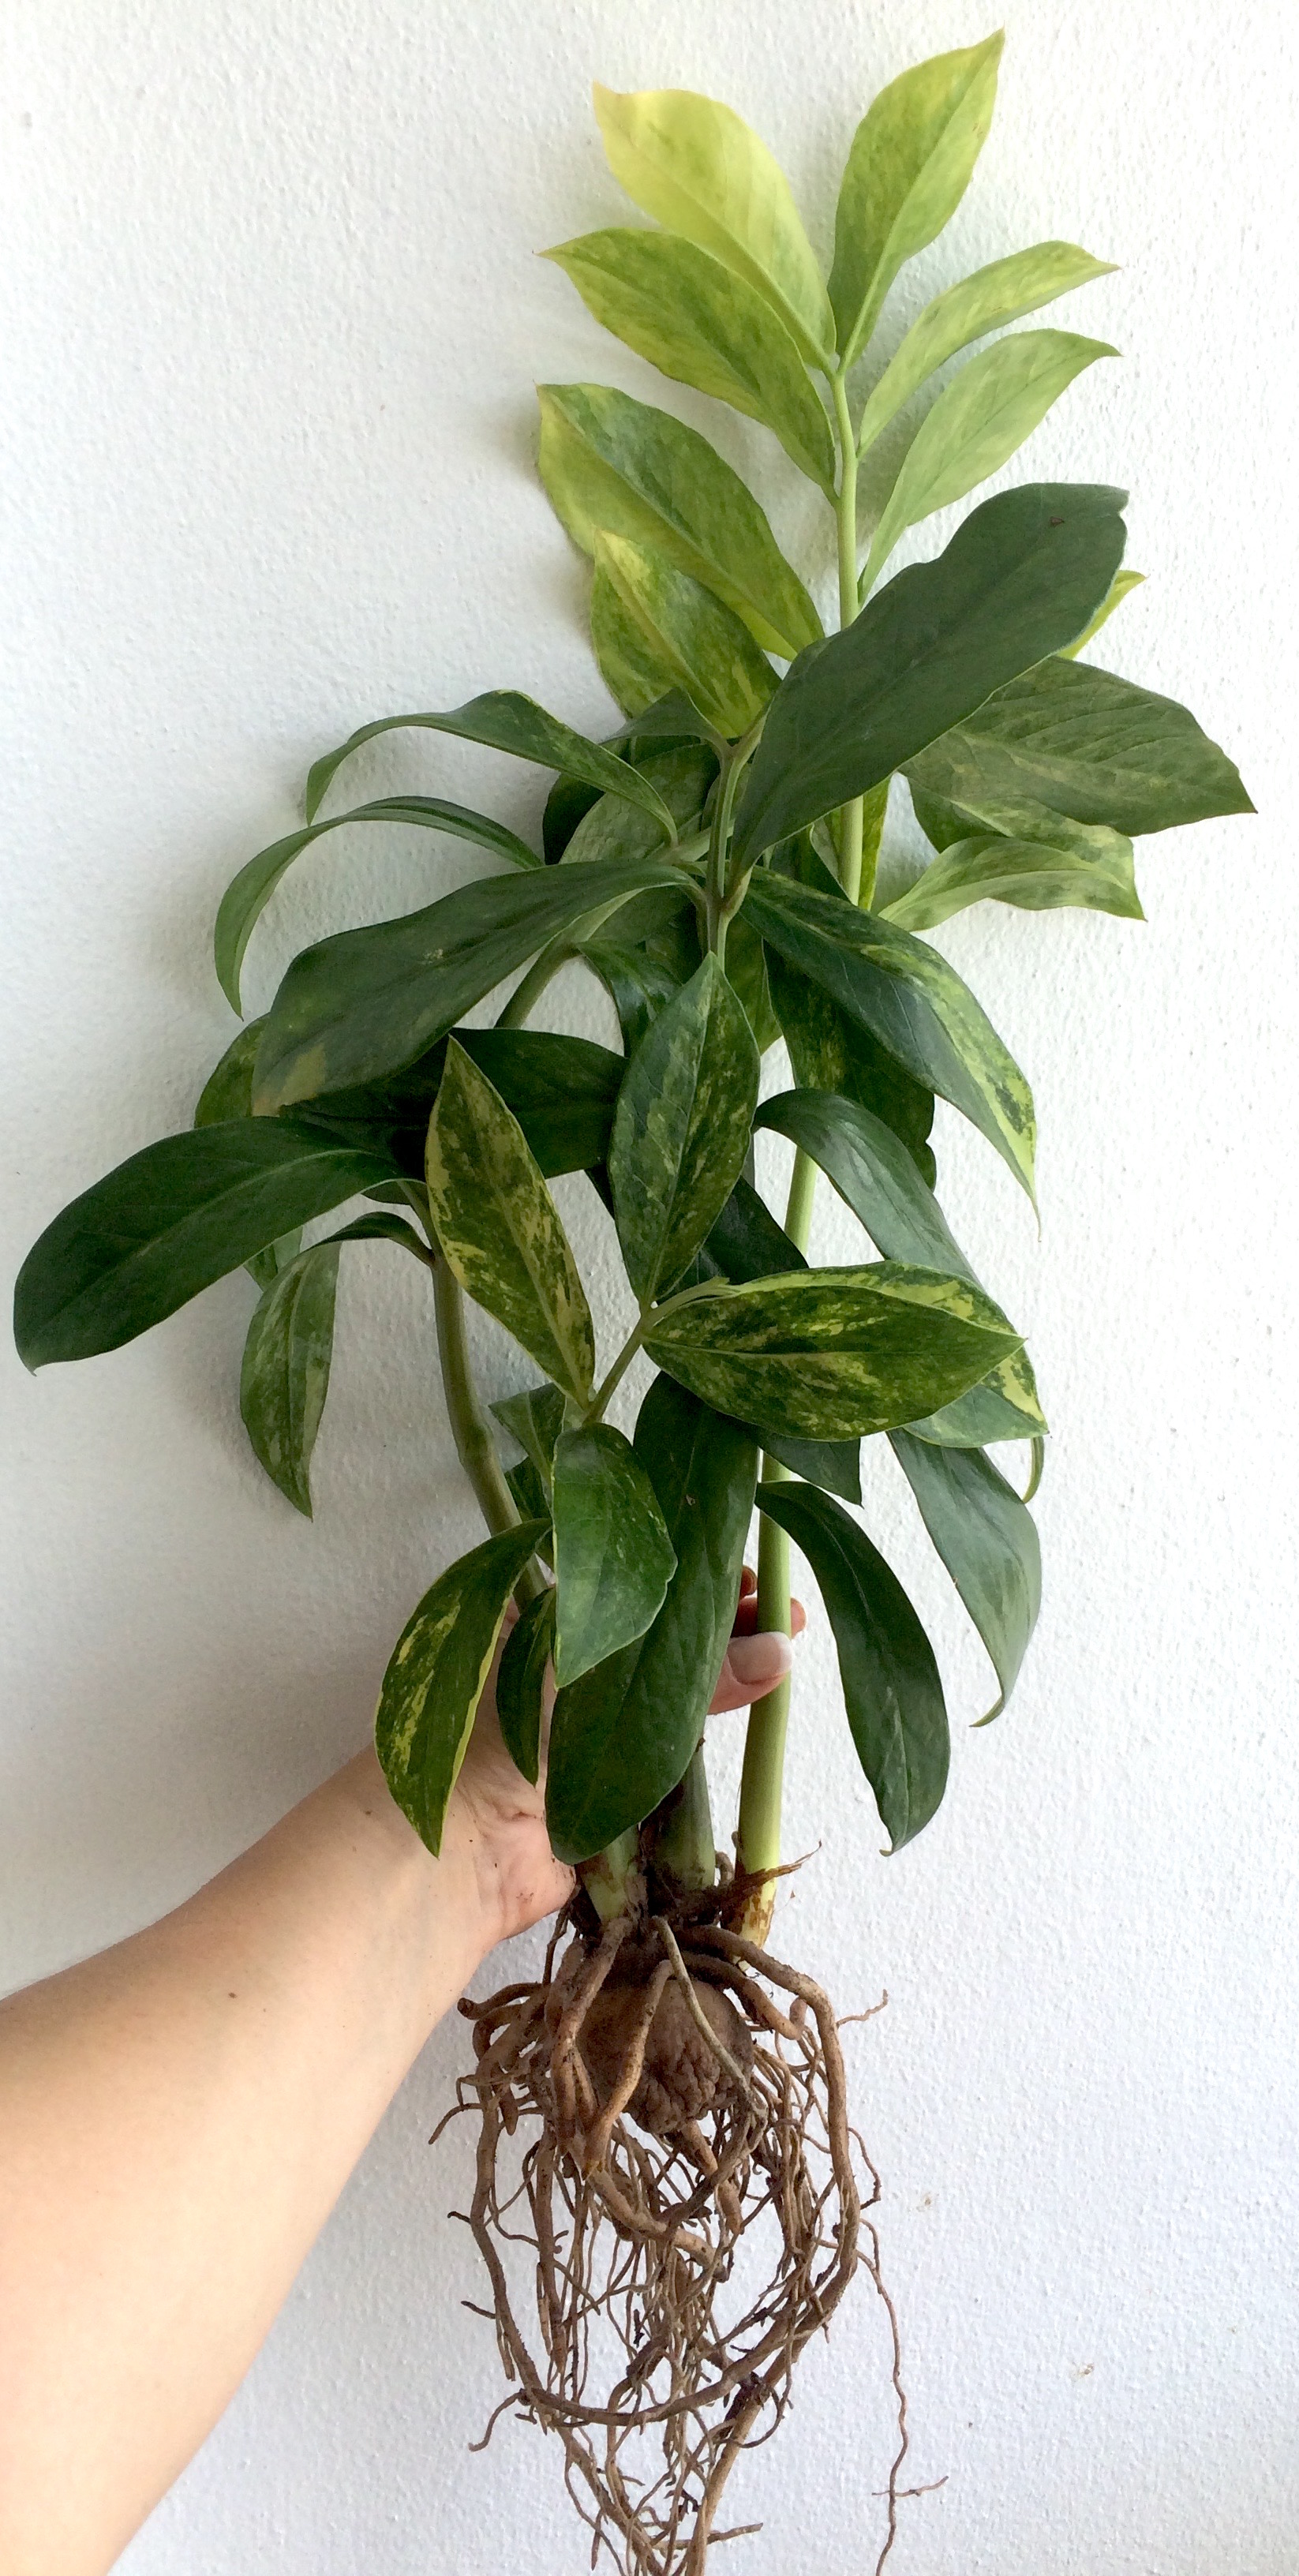 Zamioculcas zamifolia lemon variegated (long leaf)/ Замиокулькас замиелистный, желтая (лимонная)  вариегатность, длиннолистная форма  80-150